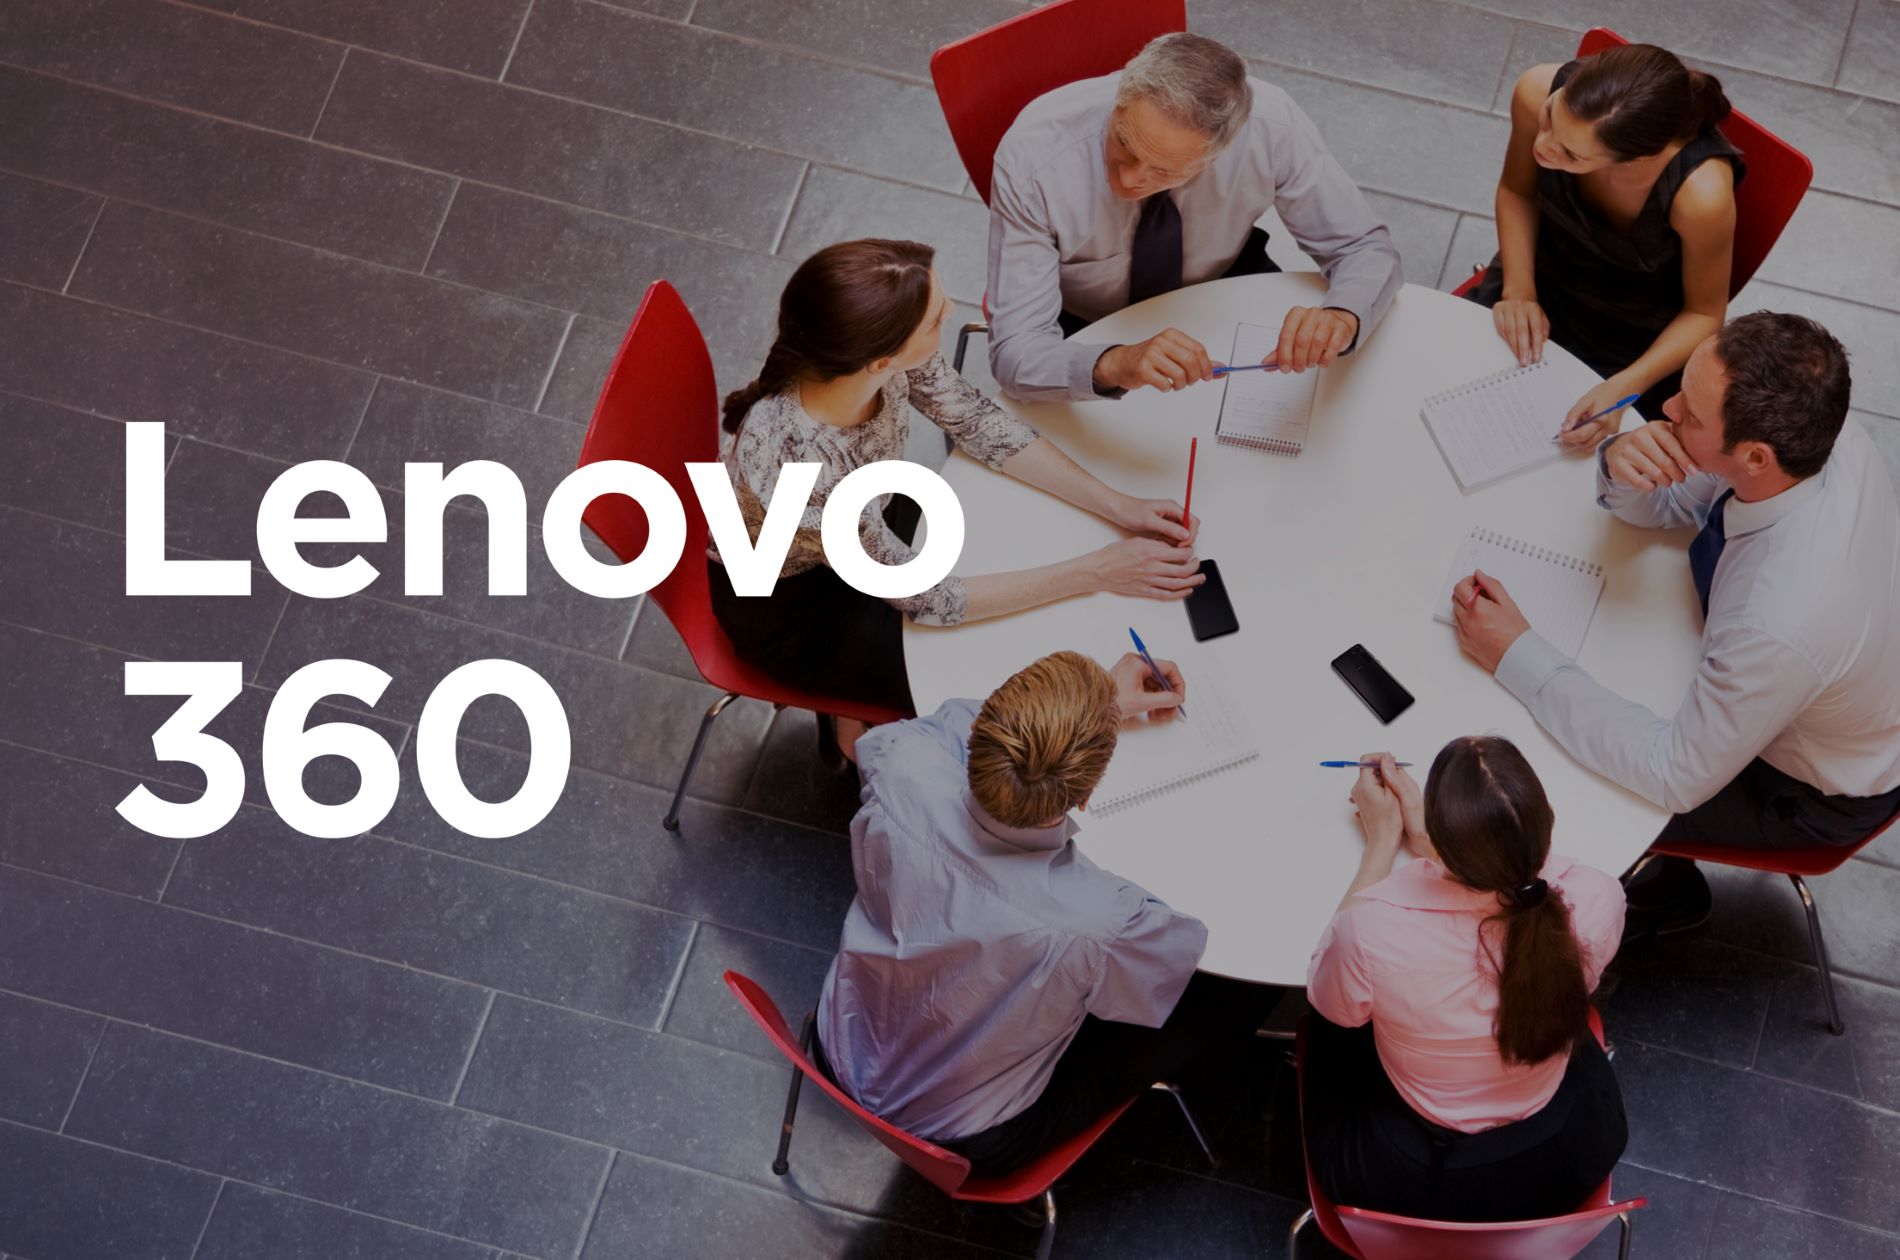 گرافیک متنی: Lenovo 360